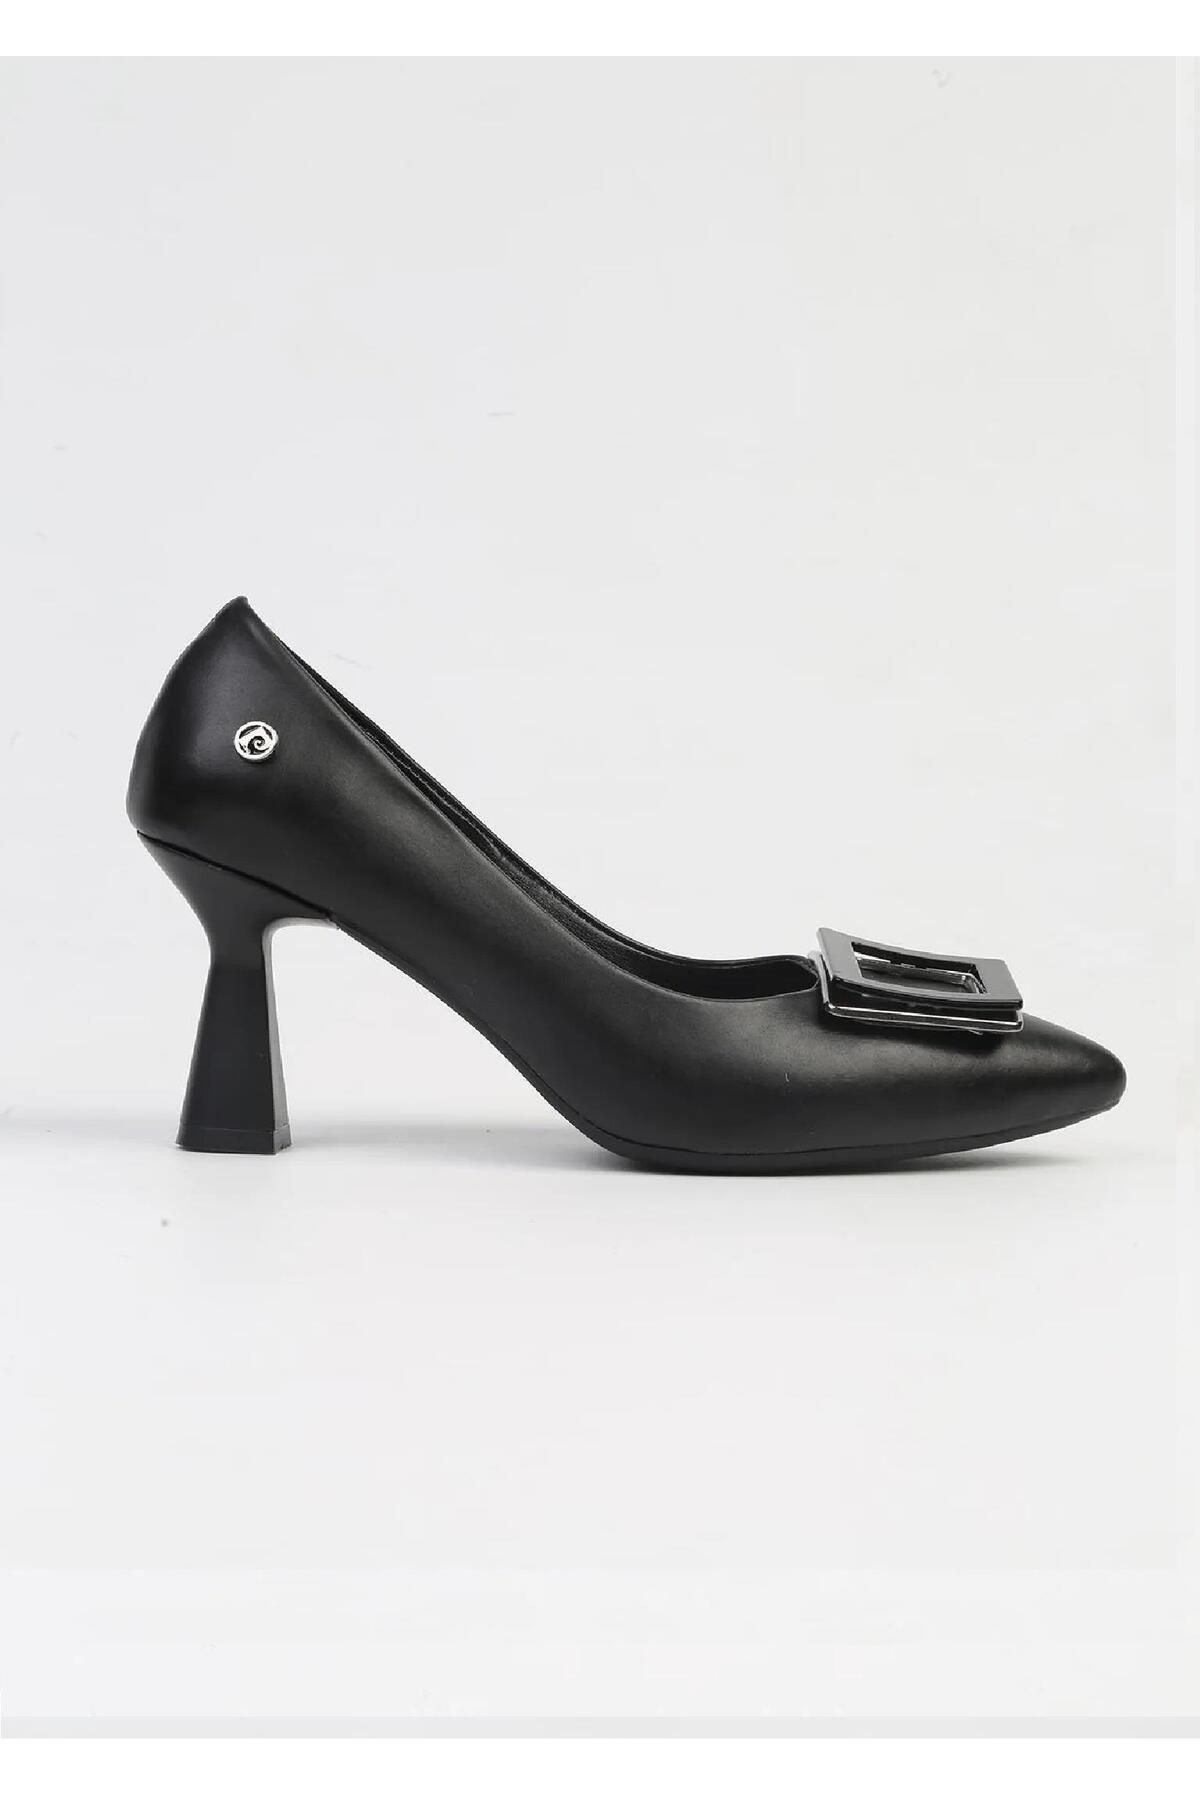 Pierre Cardin PC-53103 Siyah Cilt Kadın Topuklu Ayakkabı